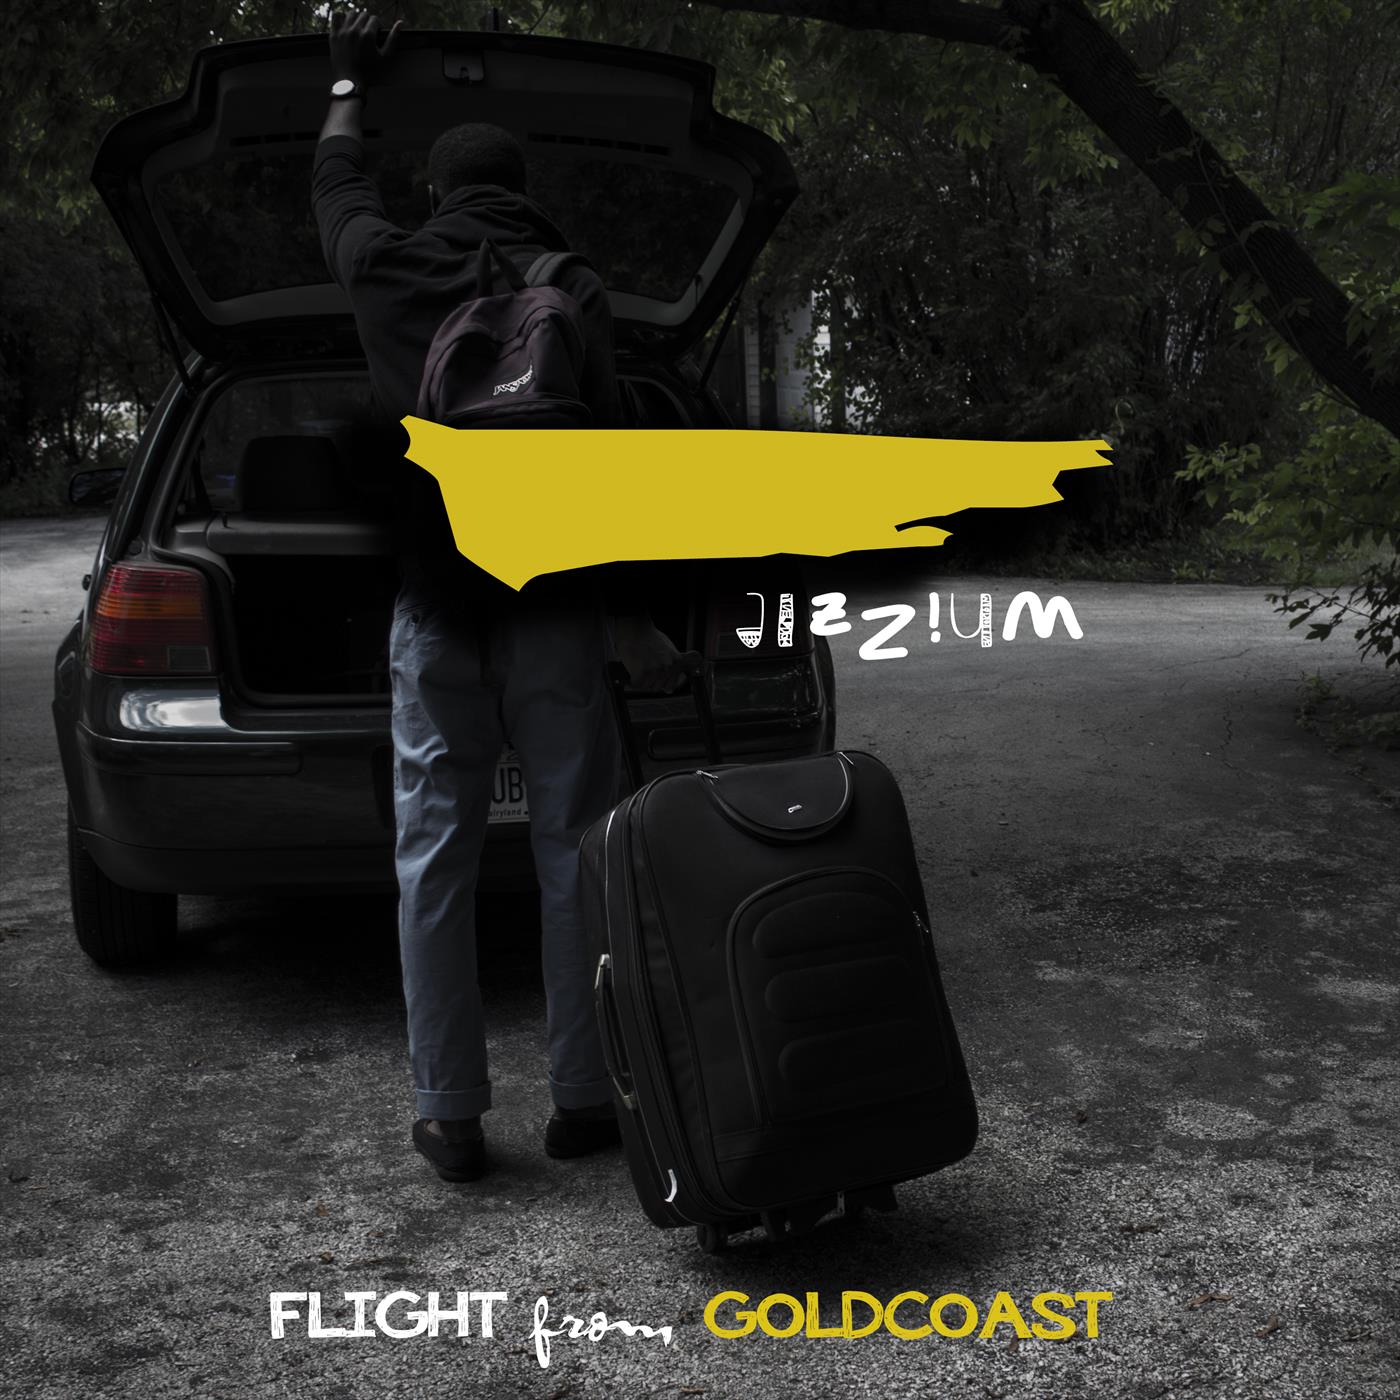 Flight from Goldcoast